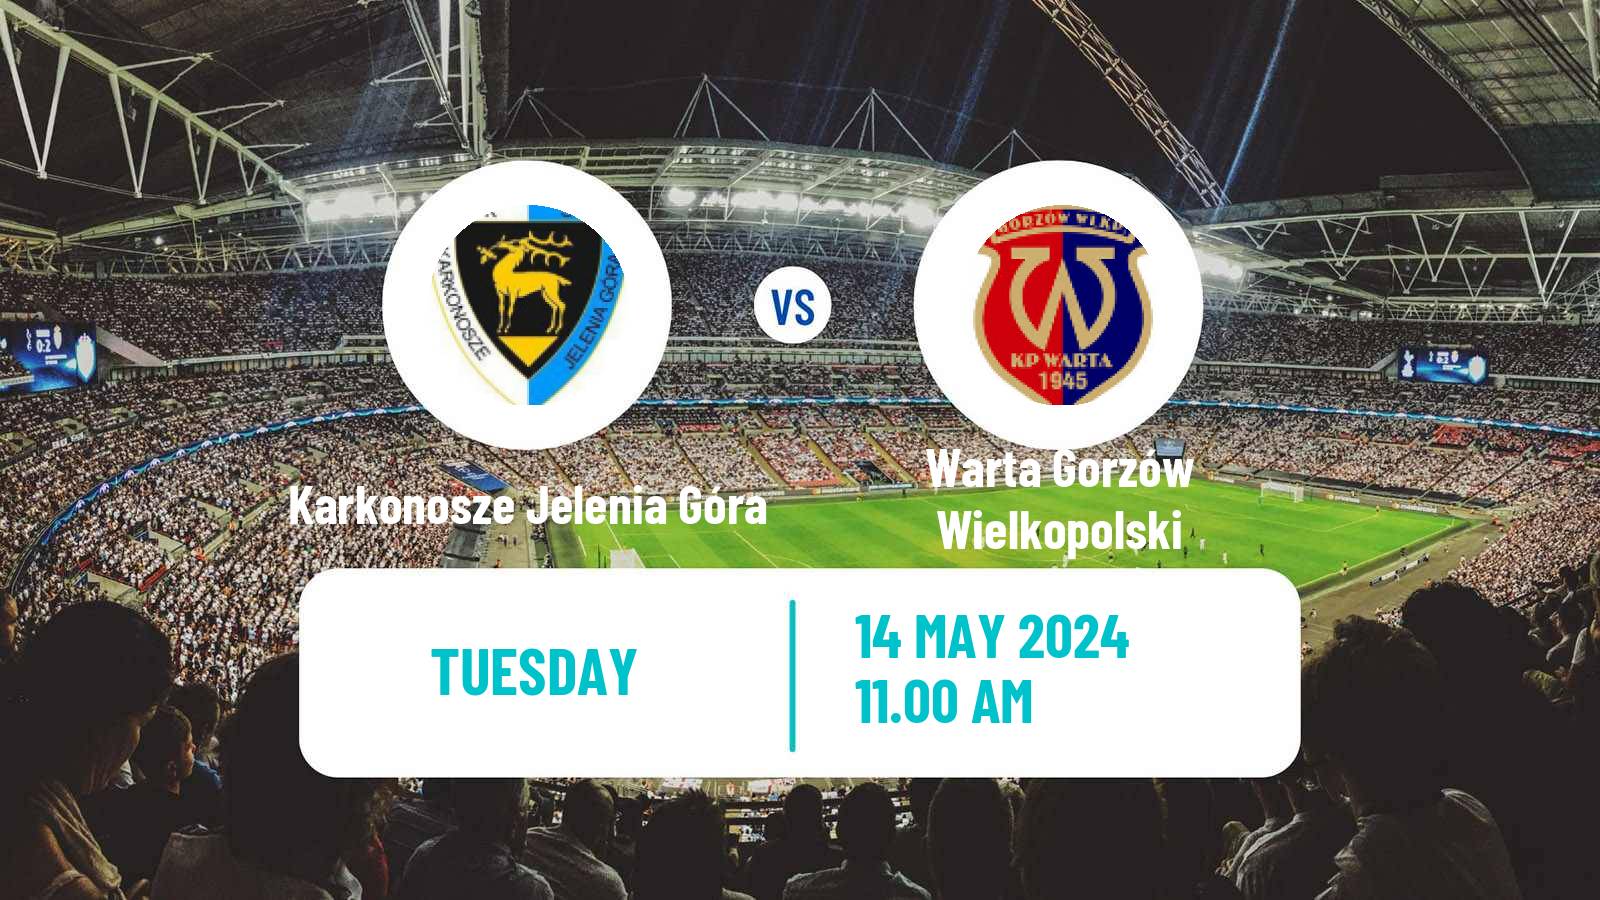 Soccer Polish Division 3 - Group III Karkonosze Jelenia Góra - Warta Gorzów Wielkopolski